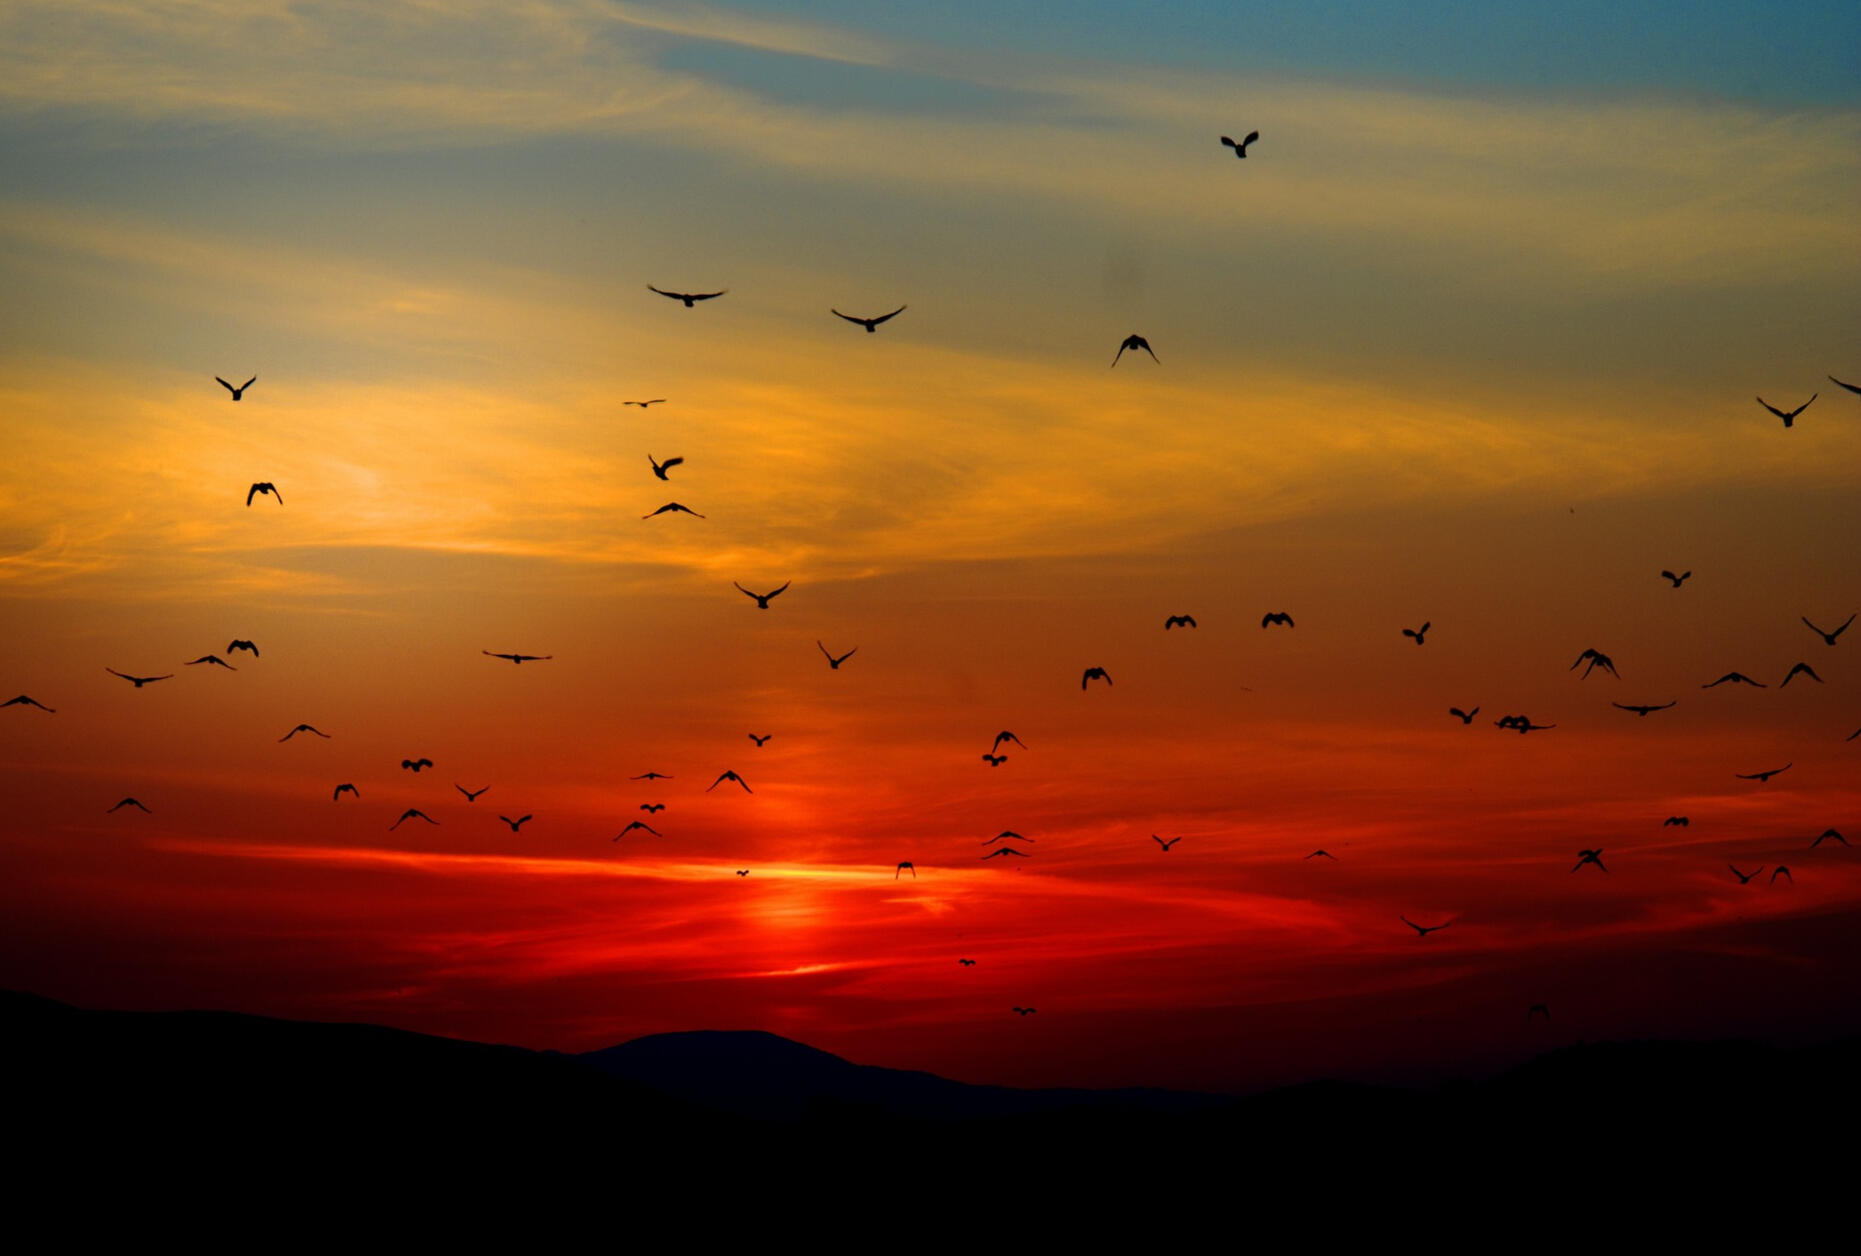 ptaki tęsknie lecące ku romatycznemu zachodowi słońca